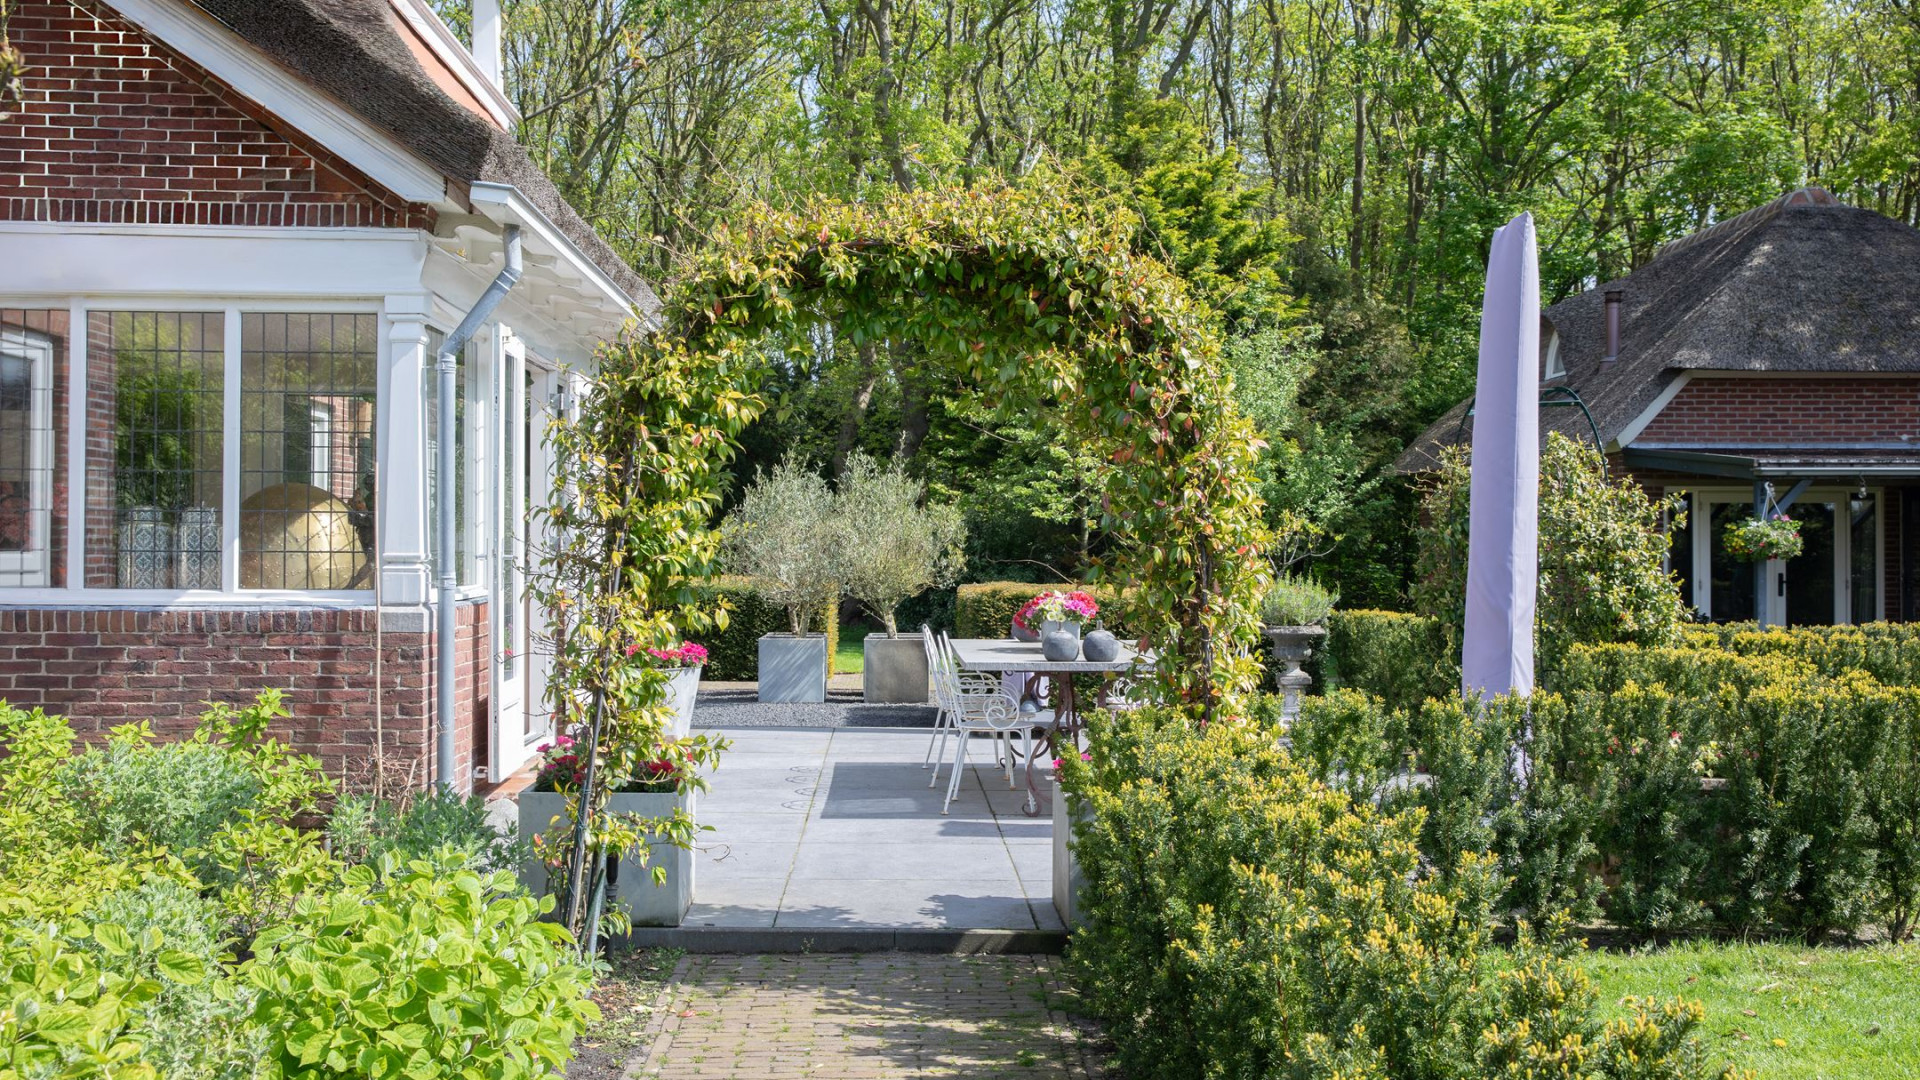 Erica en Martien Meiland zetten hun kapitale landhuis in Noordwijkerhout te koop. Zie foto's 9